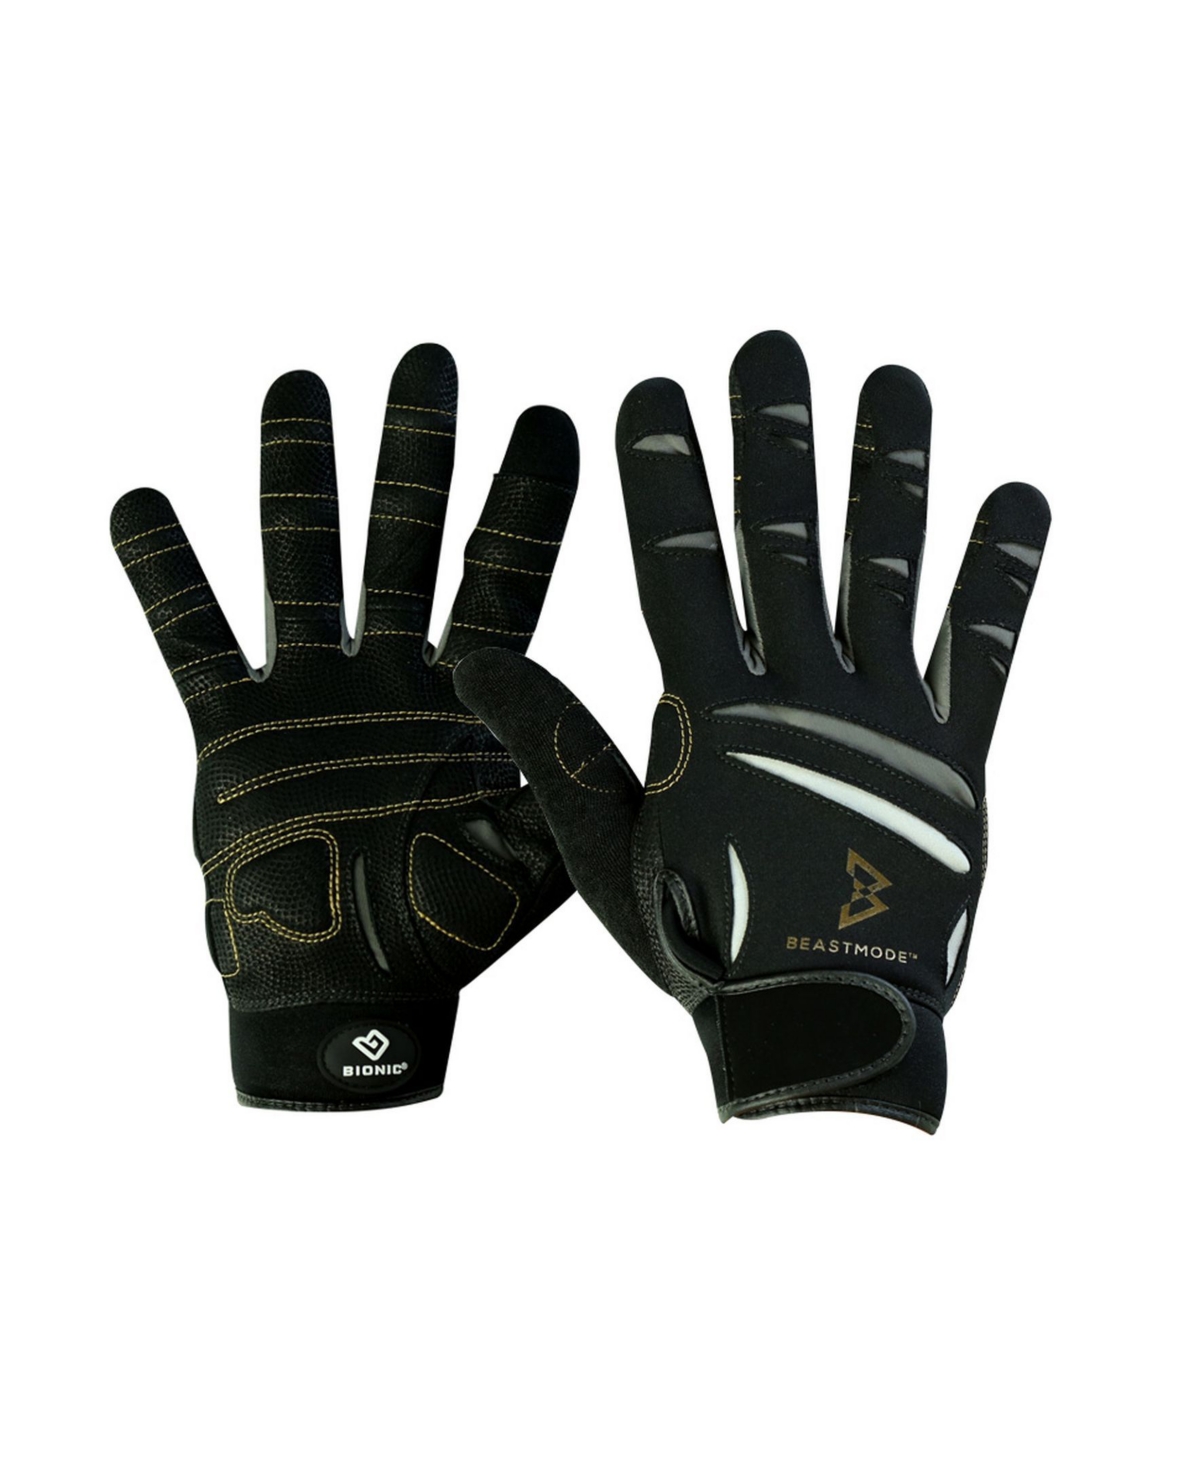 Men's Premium Beastmode Fitness Full Finger Gloves - Black